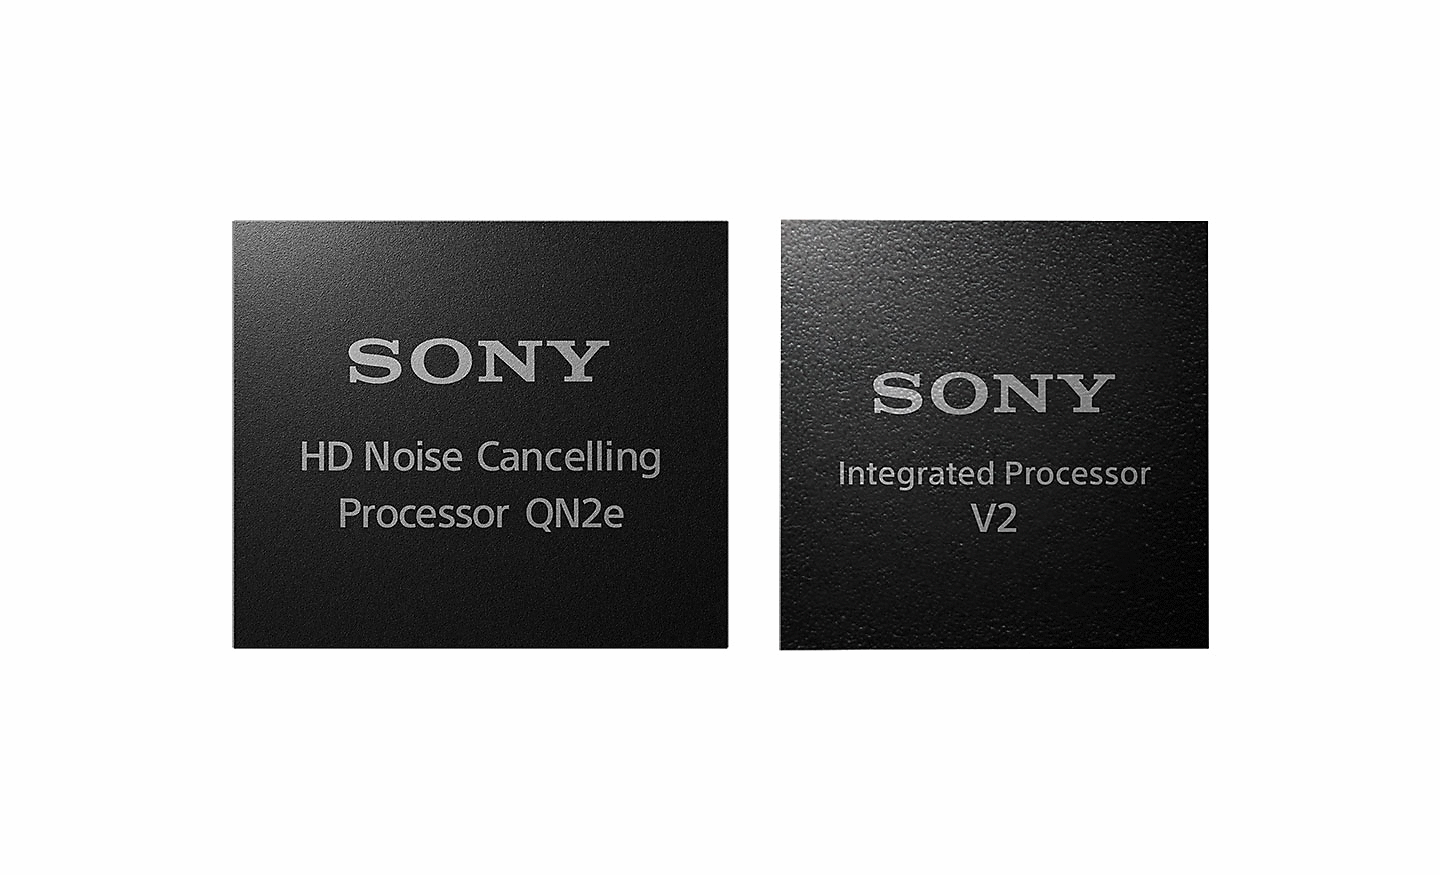 Két processzor képe, a bal oldali egy HD zajszűrő processzor, a jobb oldali pedig a beépített V2 processzor